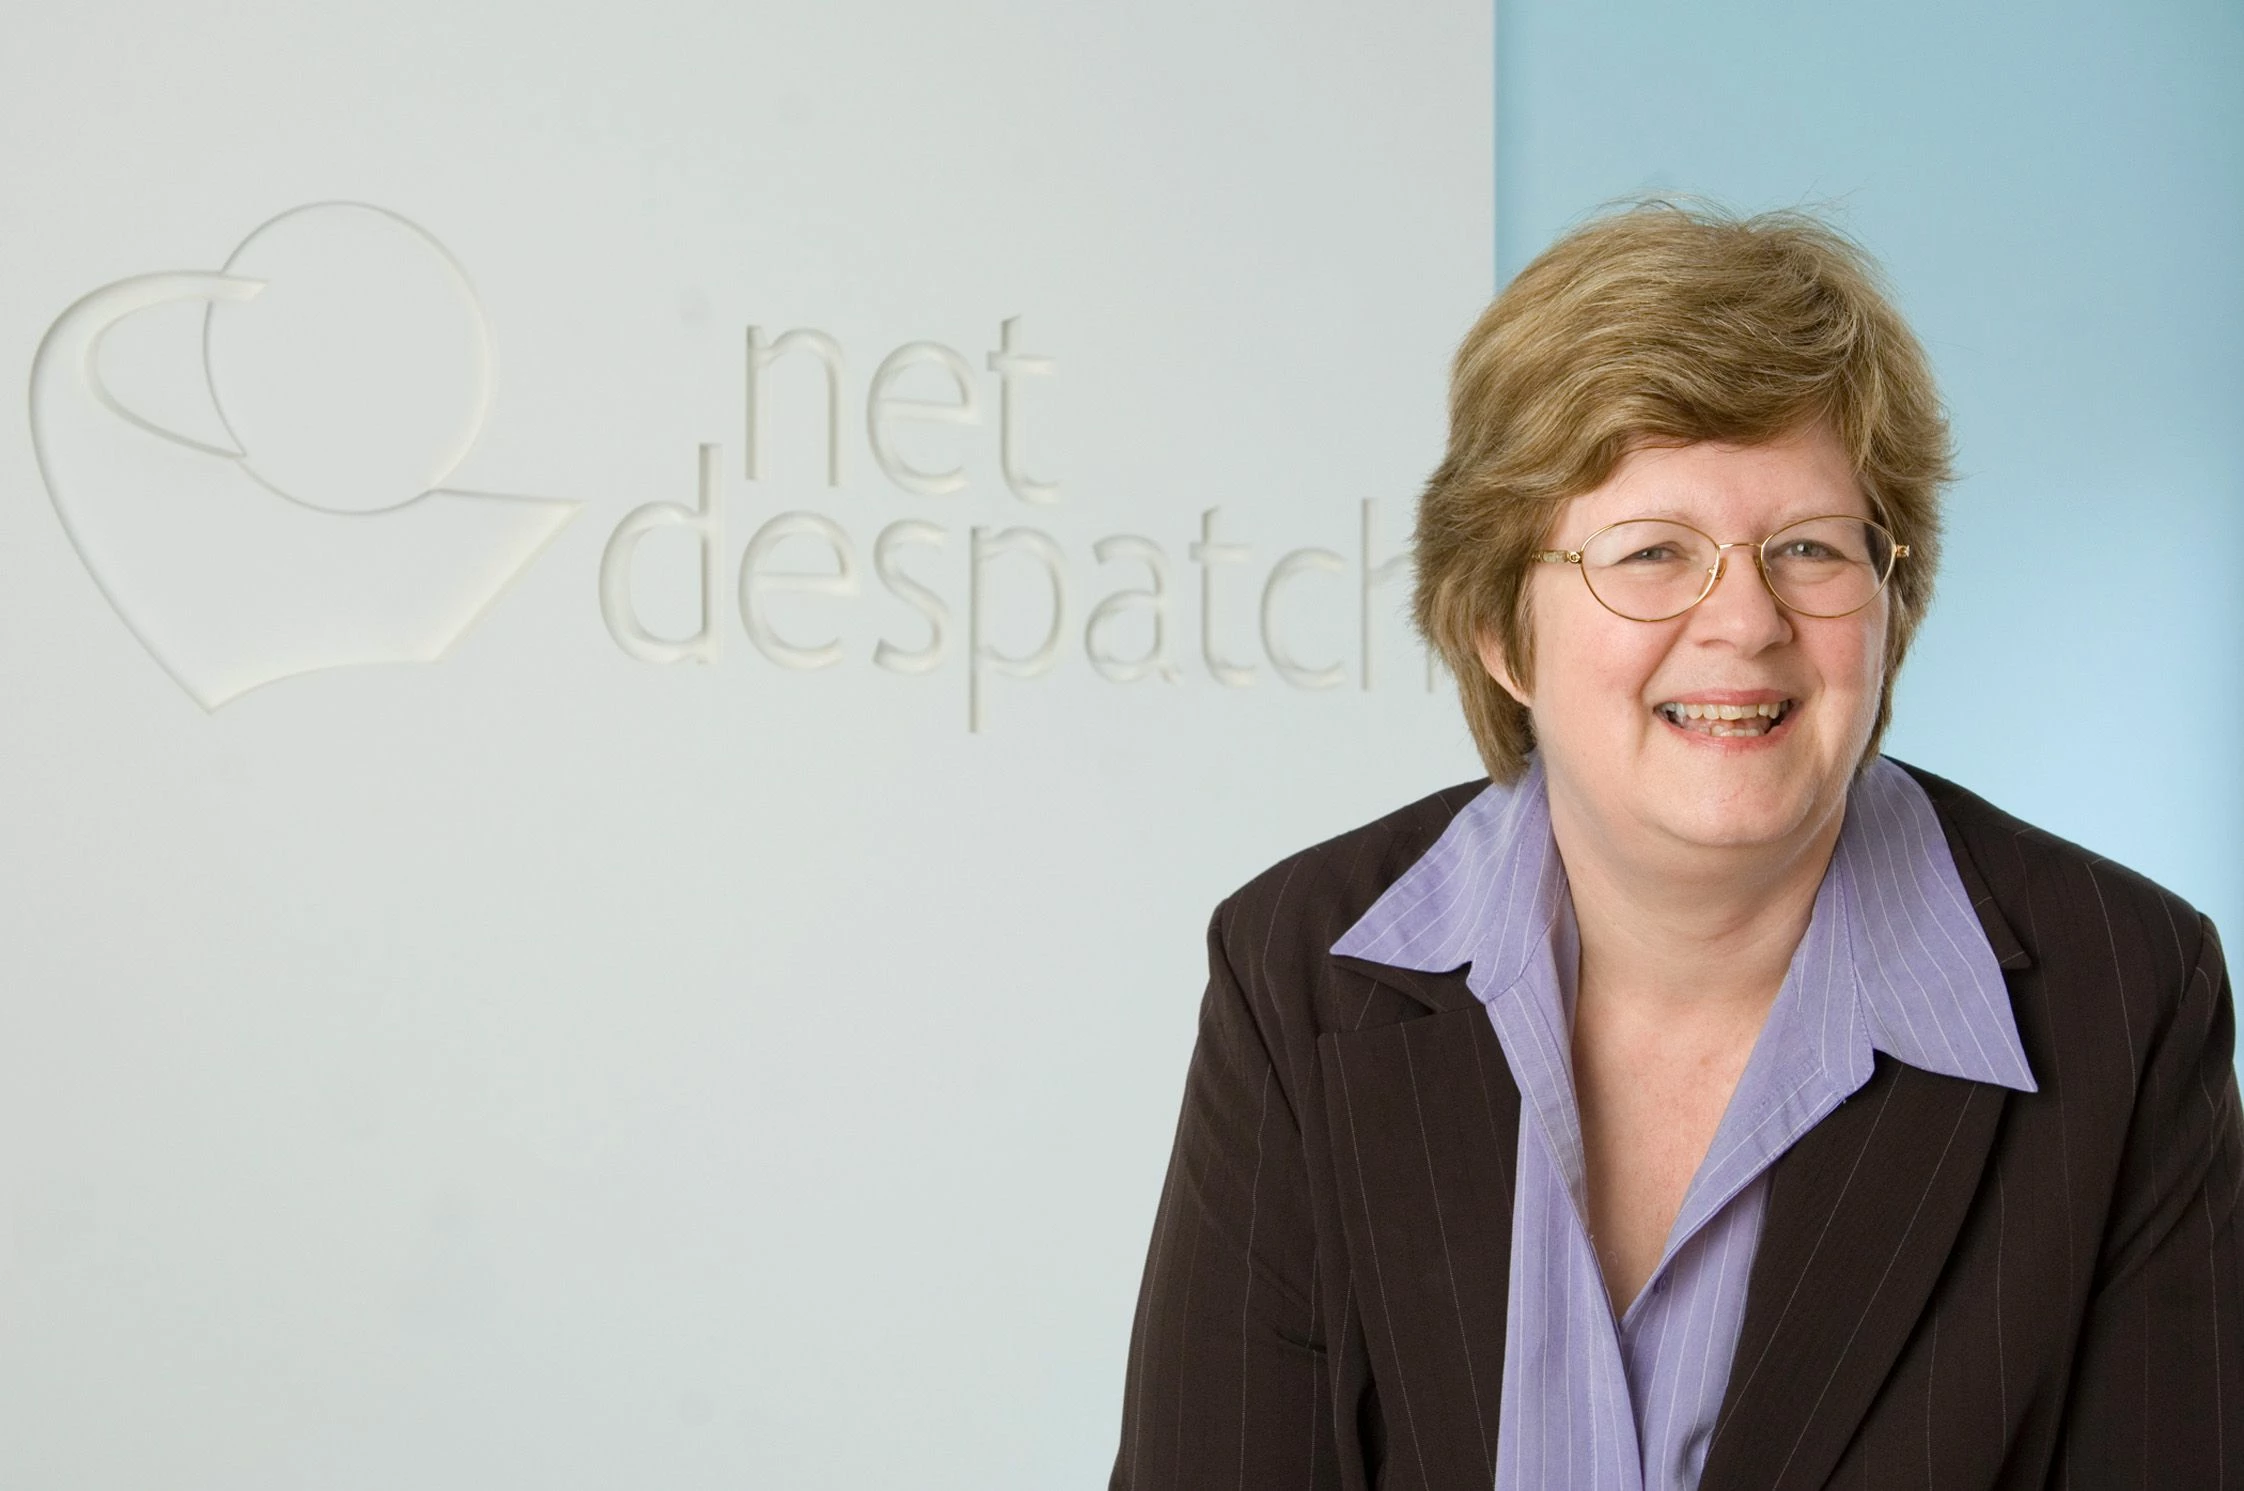 Becky Clark, CEO of NetDespatch